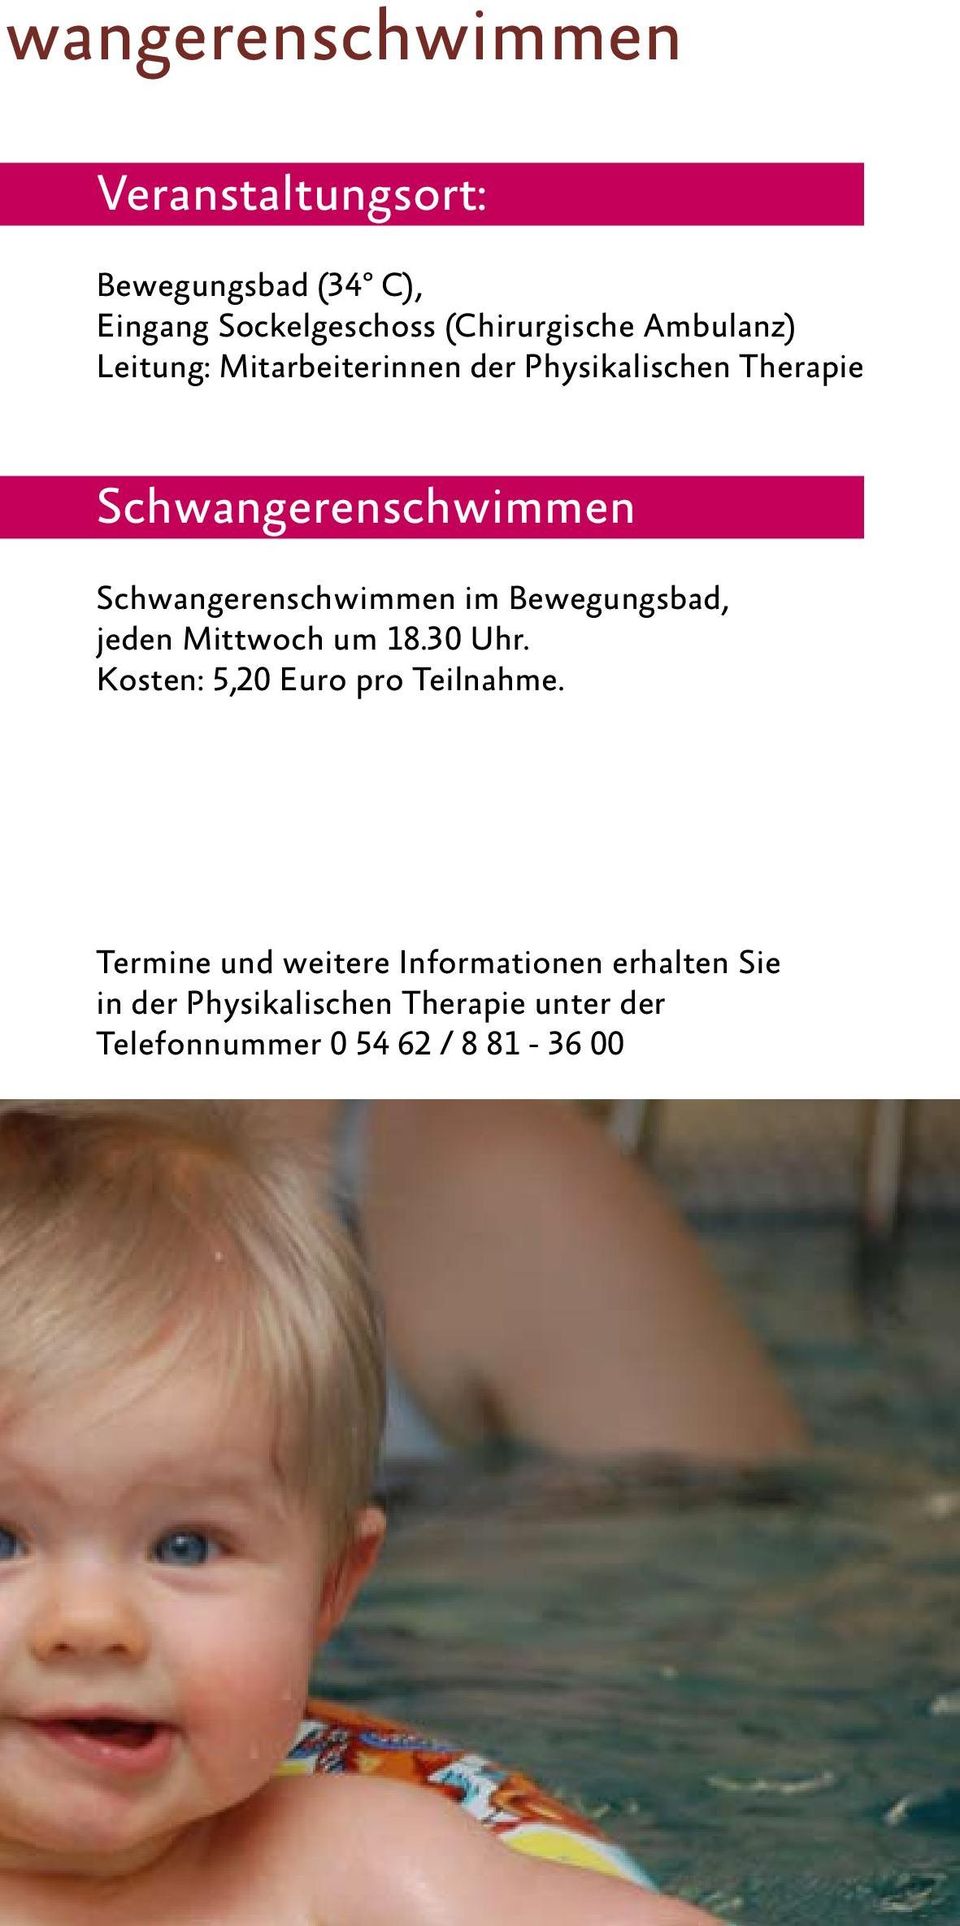 Schwangerenschwimmen im Bewegungsbad, jeden Mittwoch um 18.30 Uhr. Kosten: 5,20 Euro pro Teilnahme.